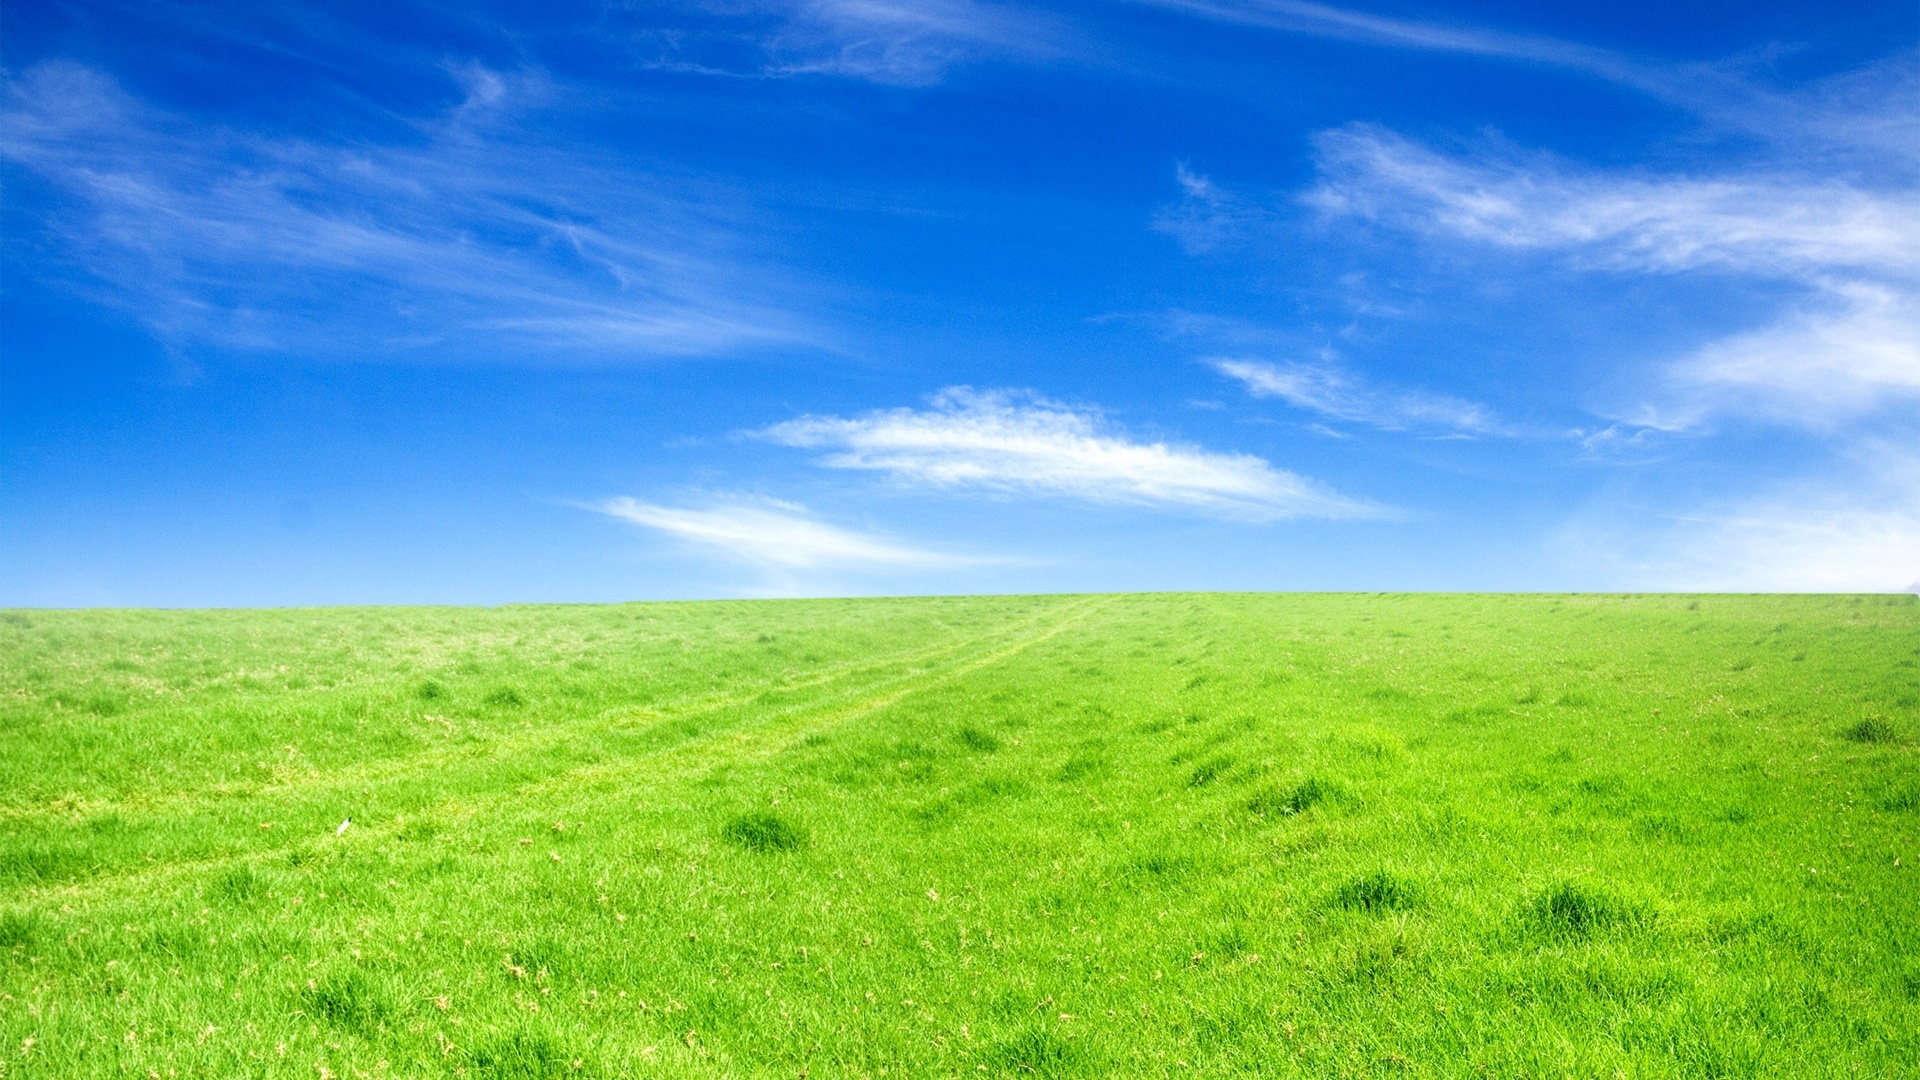 Sky And Grass desktop wallpaper hd